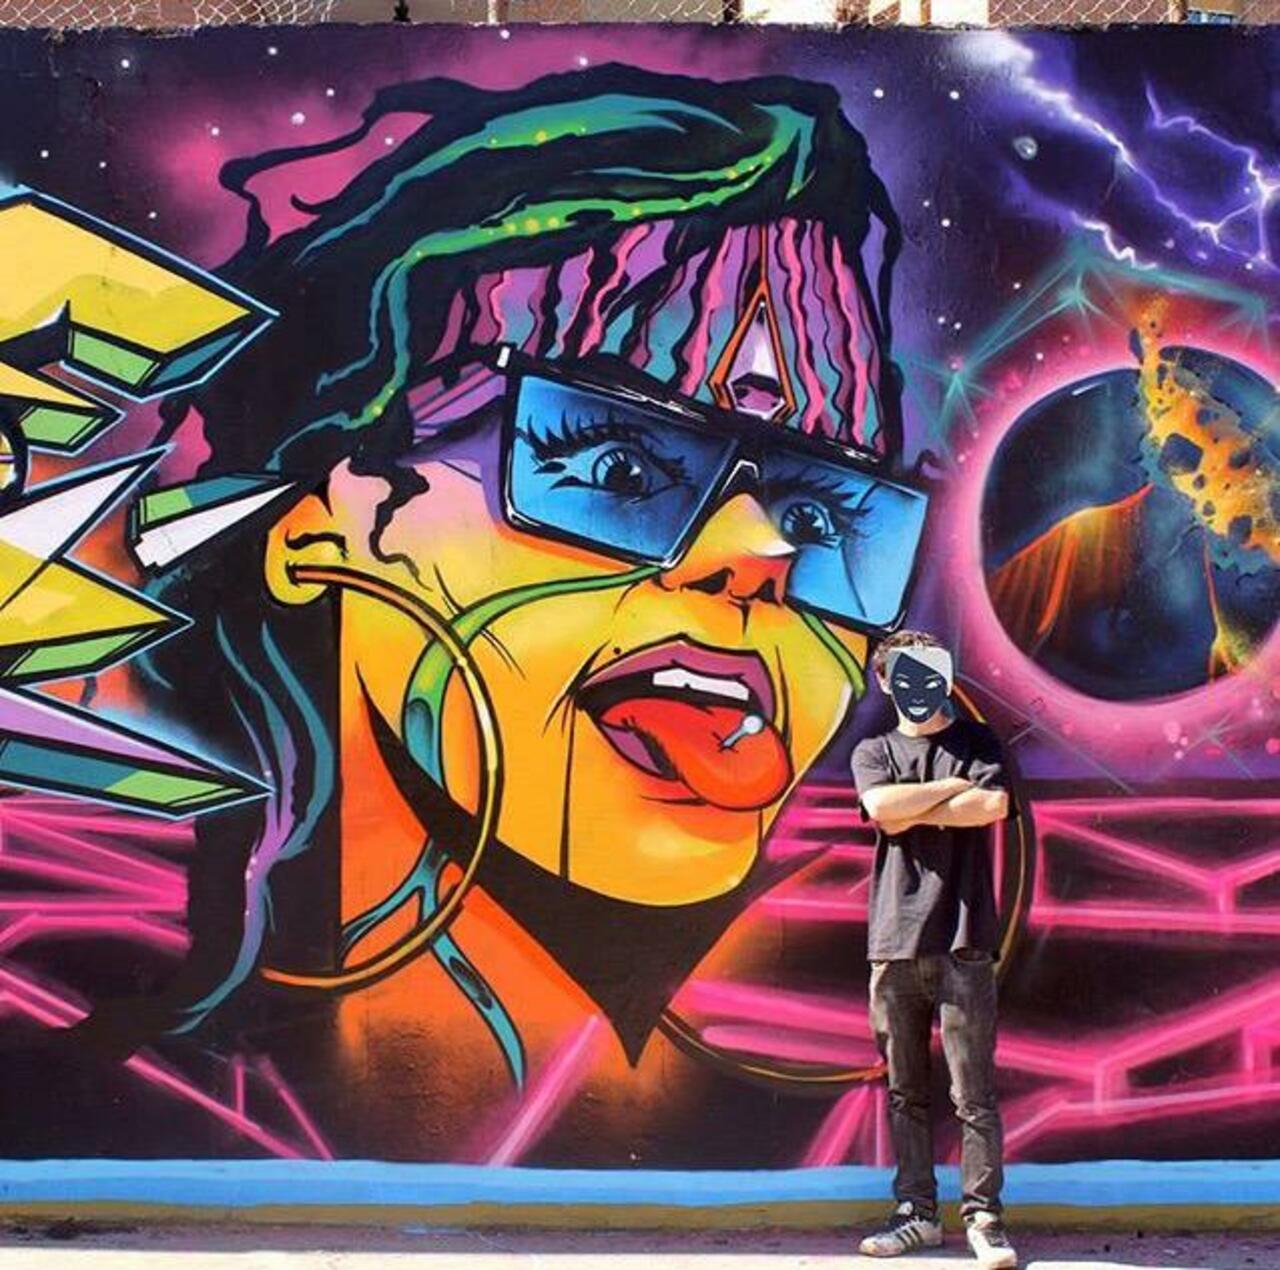 RT @GoogleStreetArt: Brilliant new Street Art by the artist Jaycaes

#art #graffiti #mural #streetart http://t.co/VwCWnmSskJ